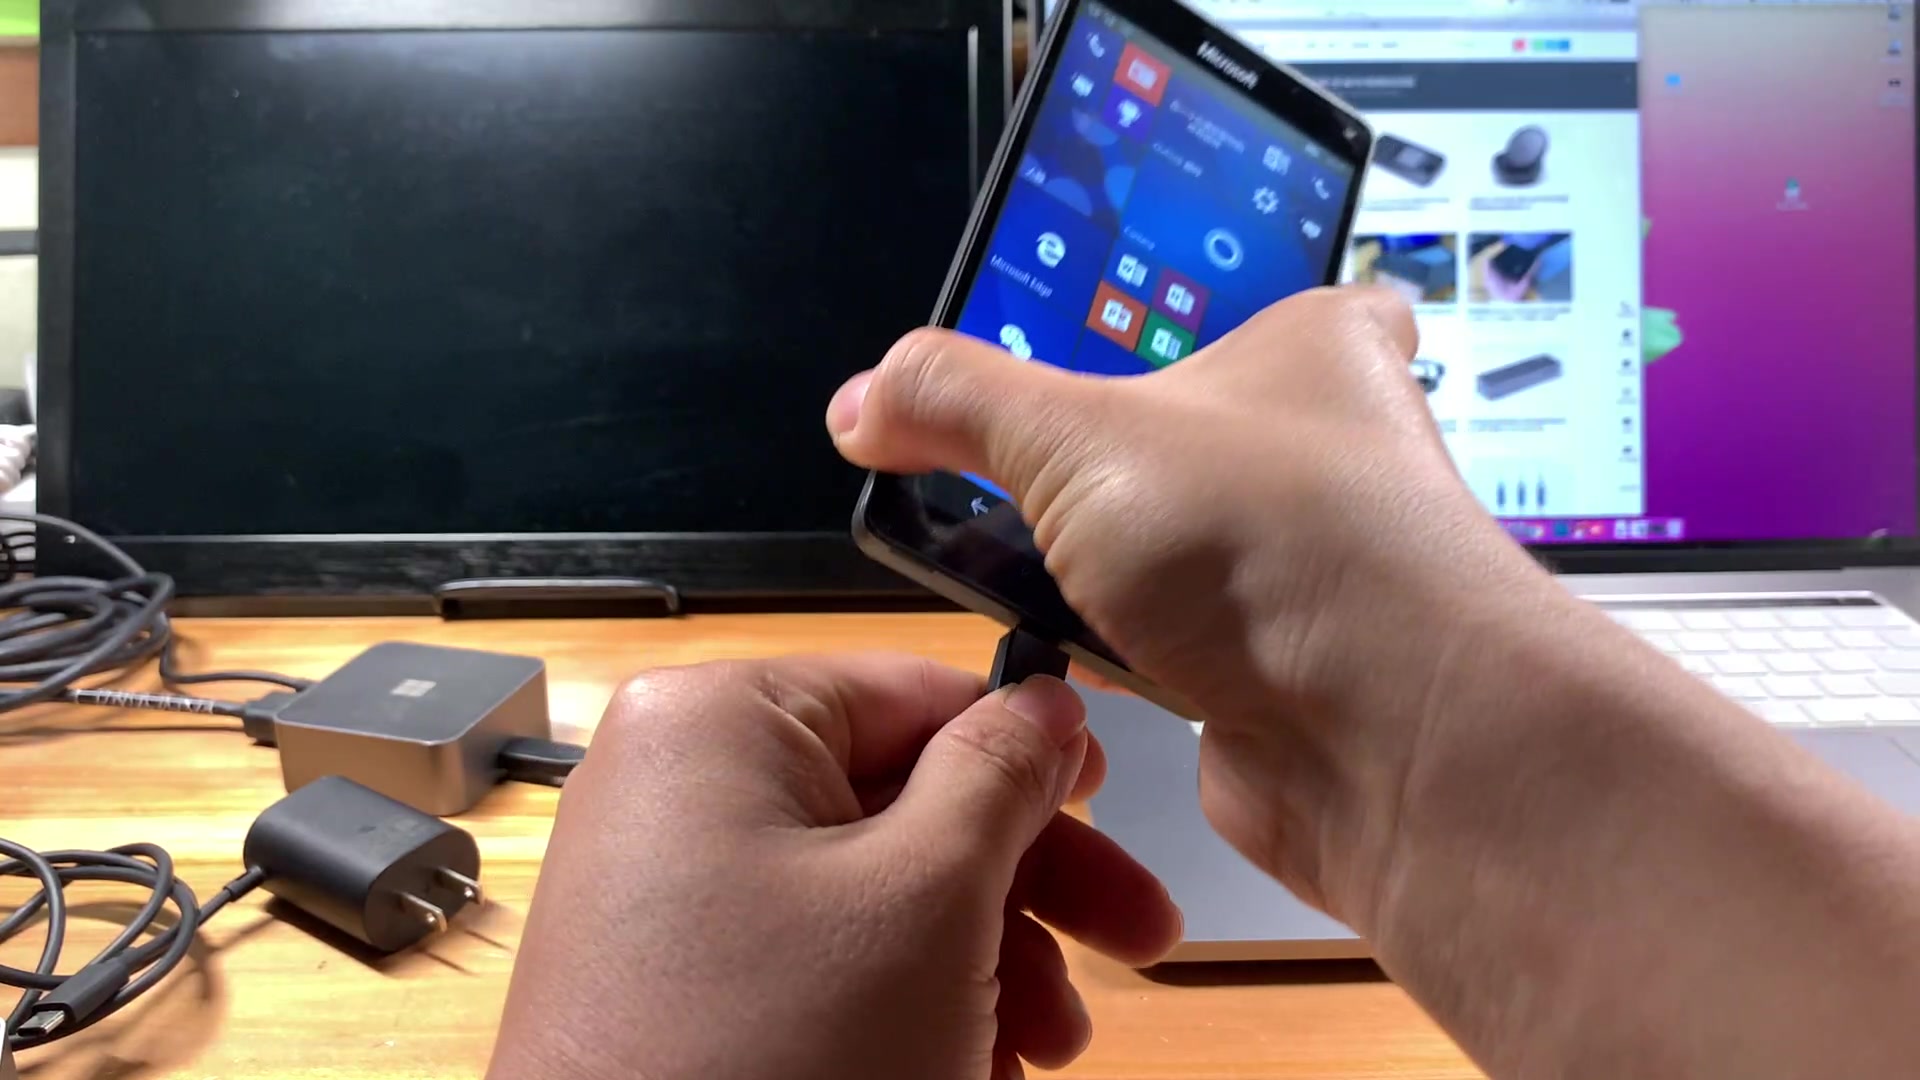 微软小方块扩展坞 可以给安卓手机 苹果笔记本 windows笔记本外接显示器和打印机等USB设备 还能给设备充电哦